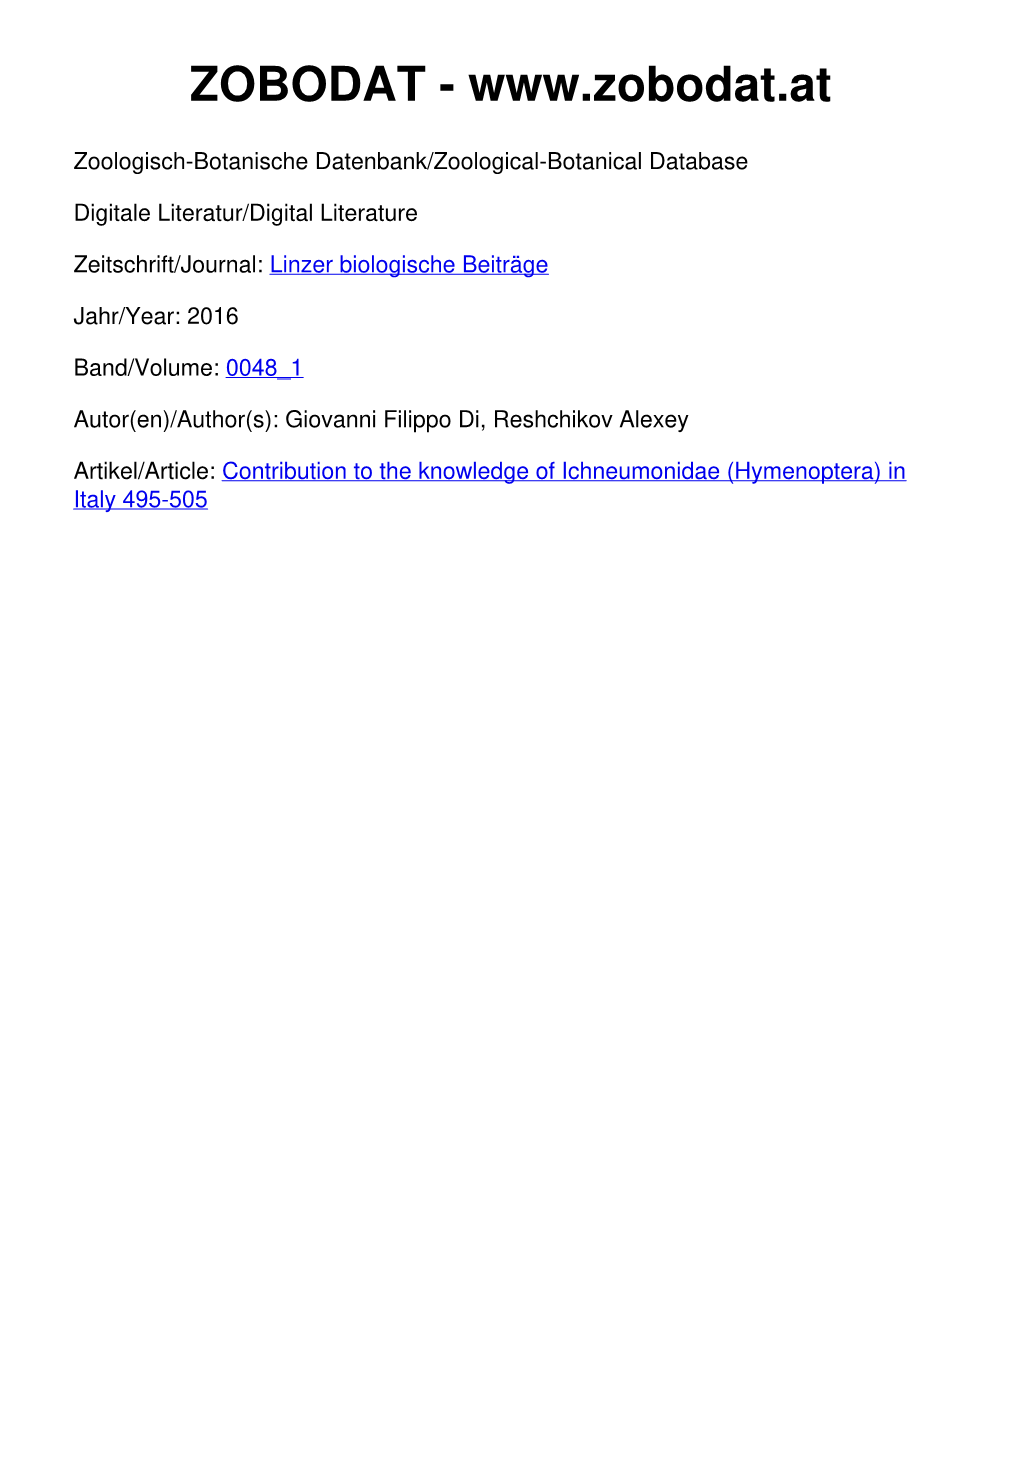 Contribution to the Knowledge of Ichneumonidae (Hymenoptera) in Italy 495-505 ©Biologiezentrum Linz, Austria; Download Unter